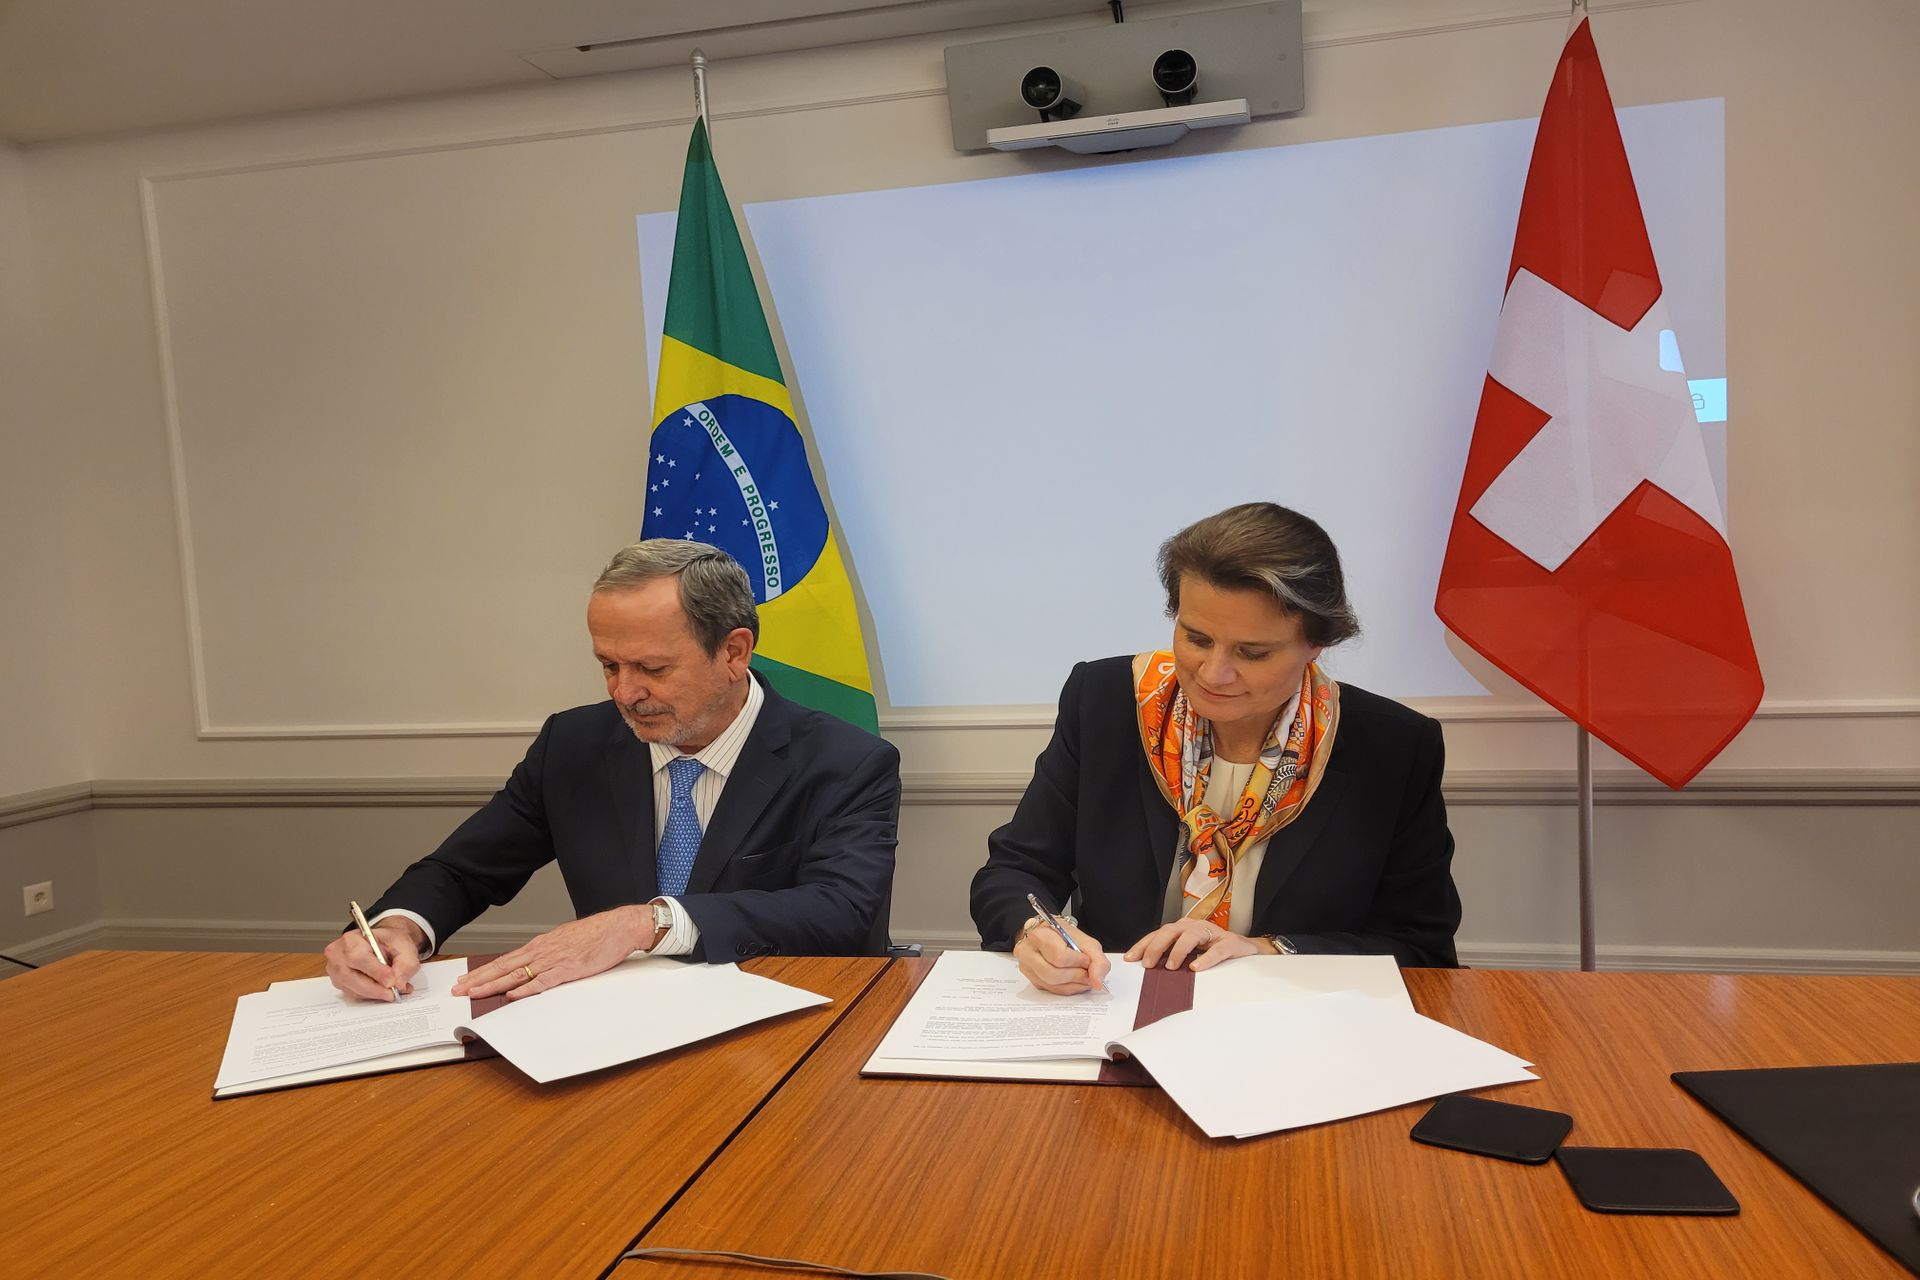 Martina Hirayama, Segretaria di Stato della Confederazione Svizzera, e Sergio Freitas de Almeida, Vize Ministro della Scienza, della Tecnologia e dell’Innovazione, hanno sottolineato il 15 marzo 2022 l’intenzione di approfondire le relazioni bilaterali